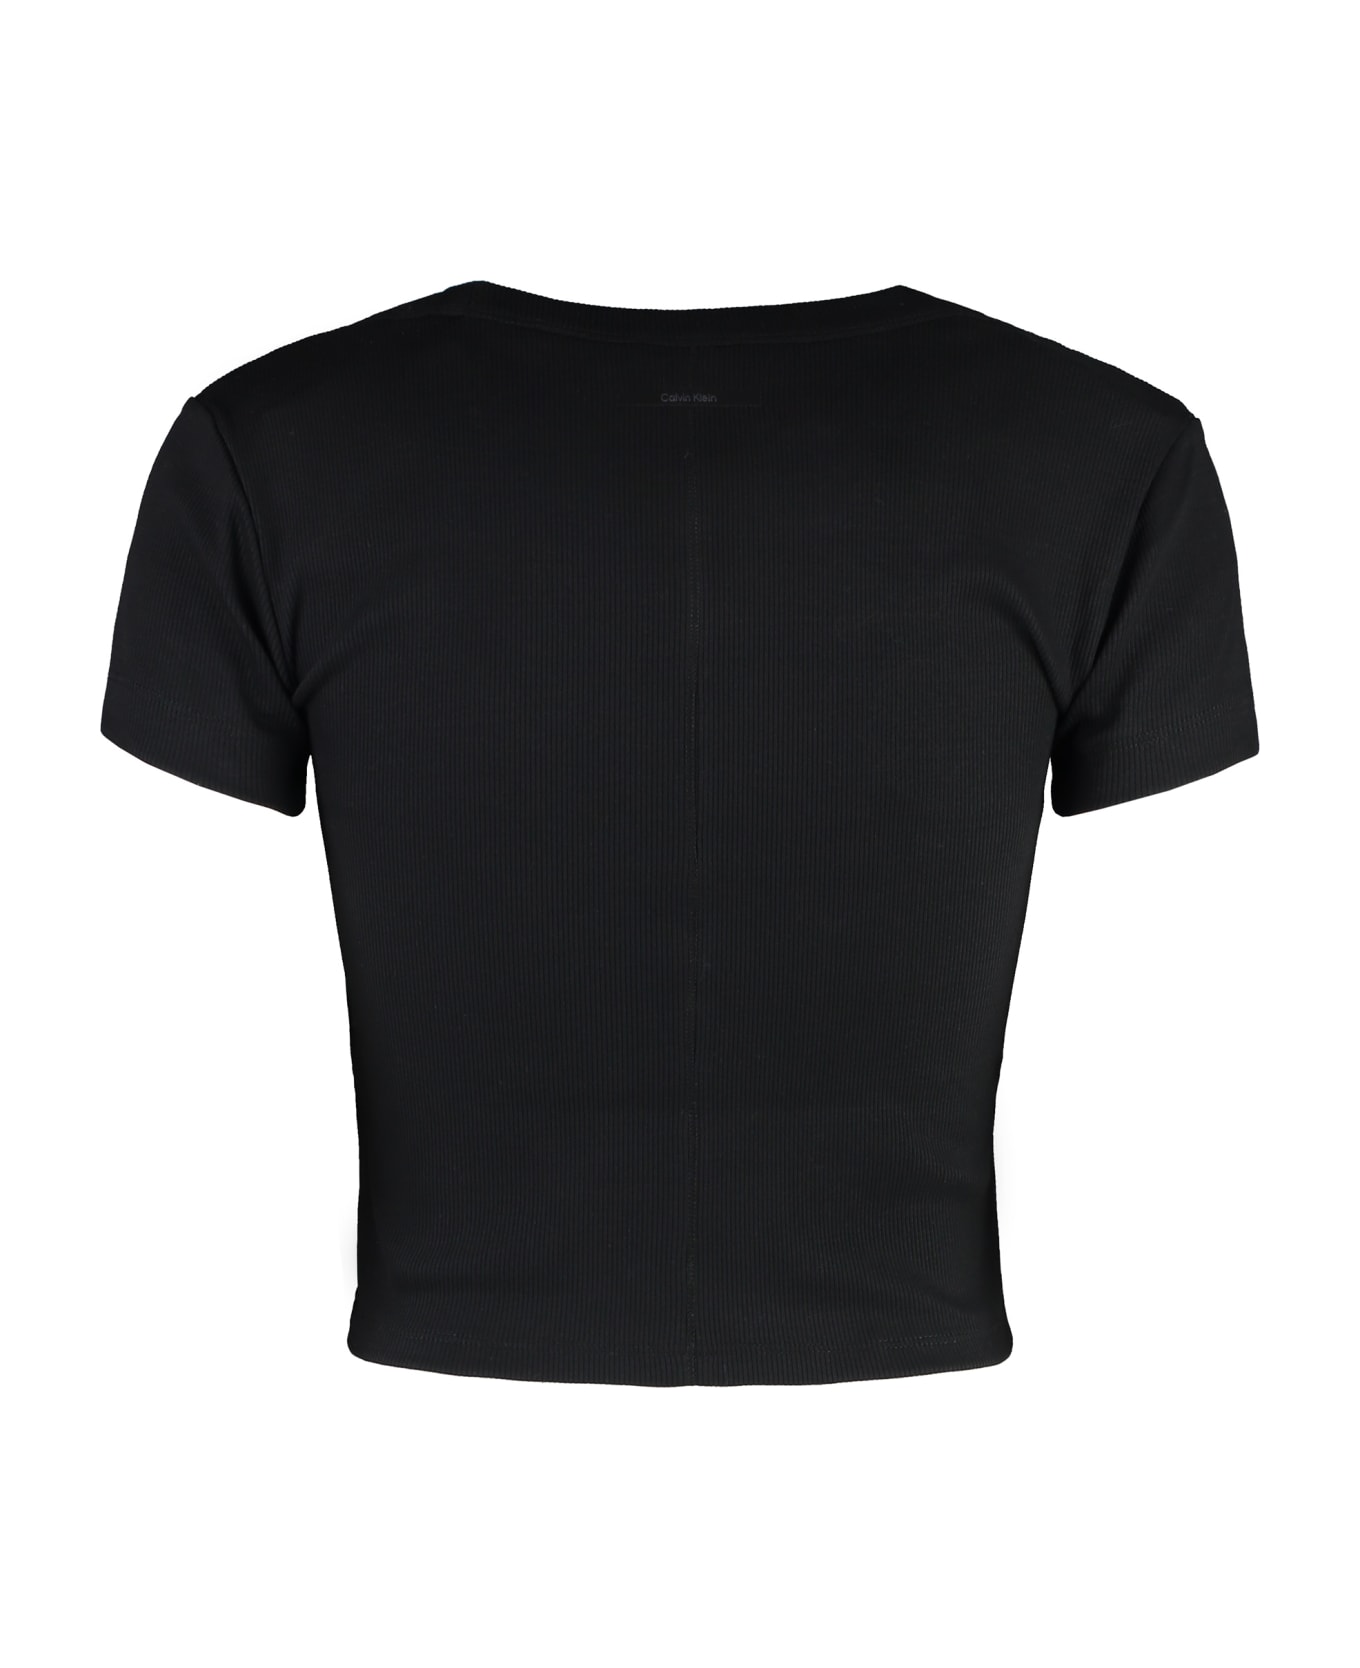 Calvin Klein Cotton Crop Top - black Tシャツ